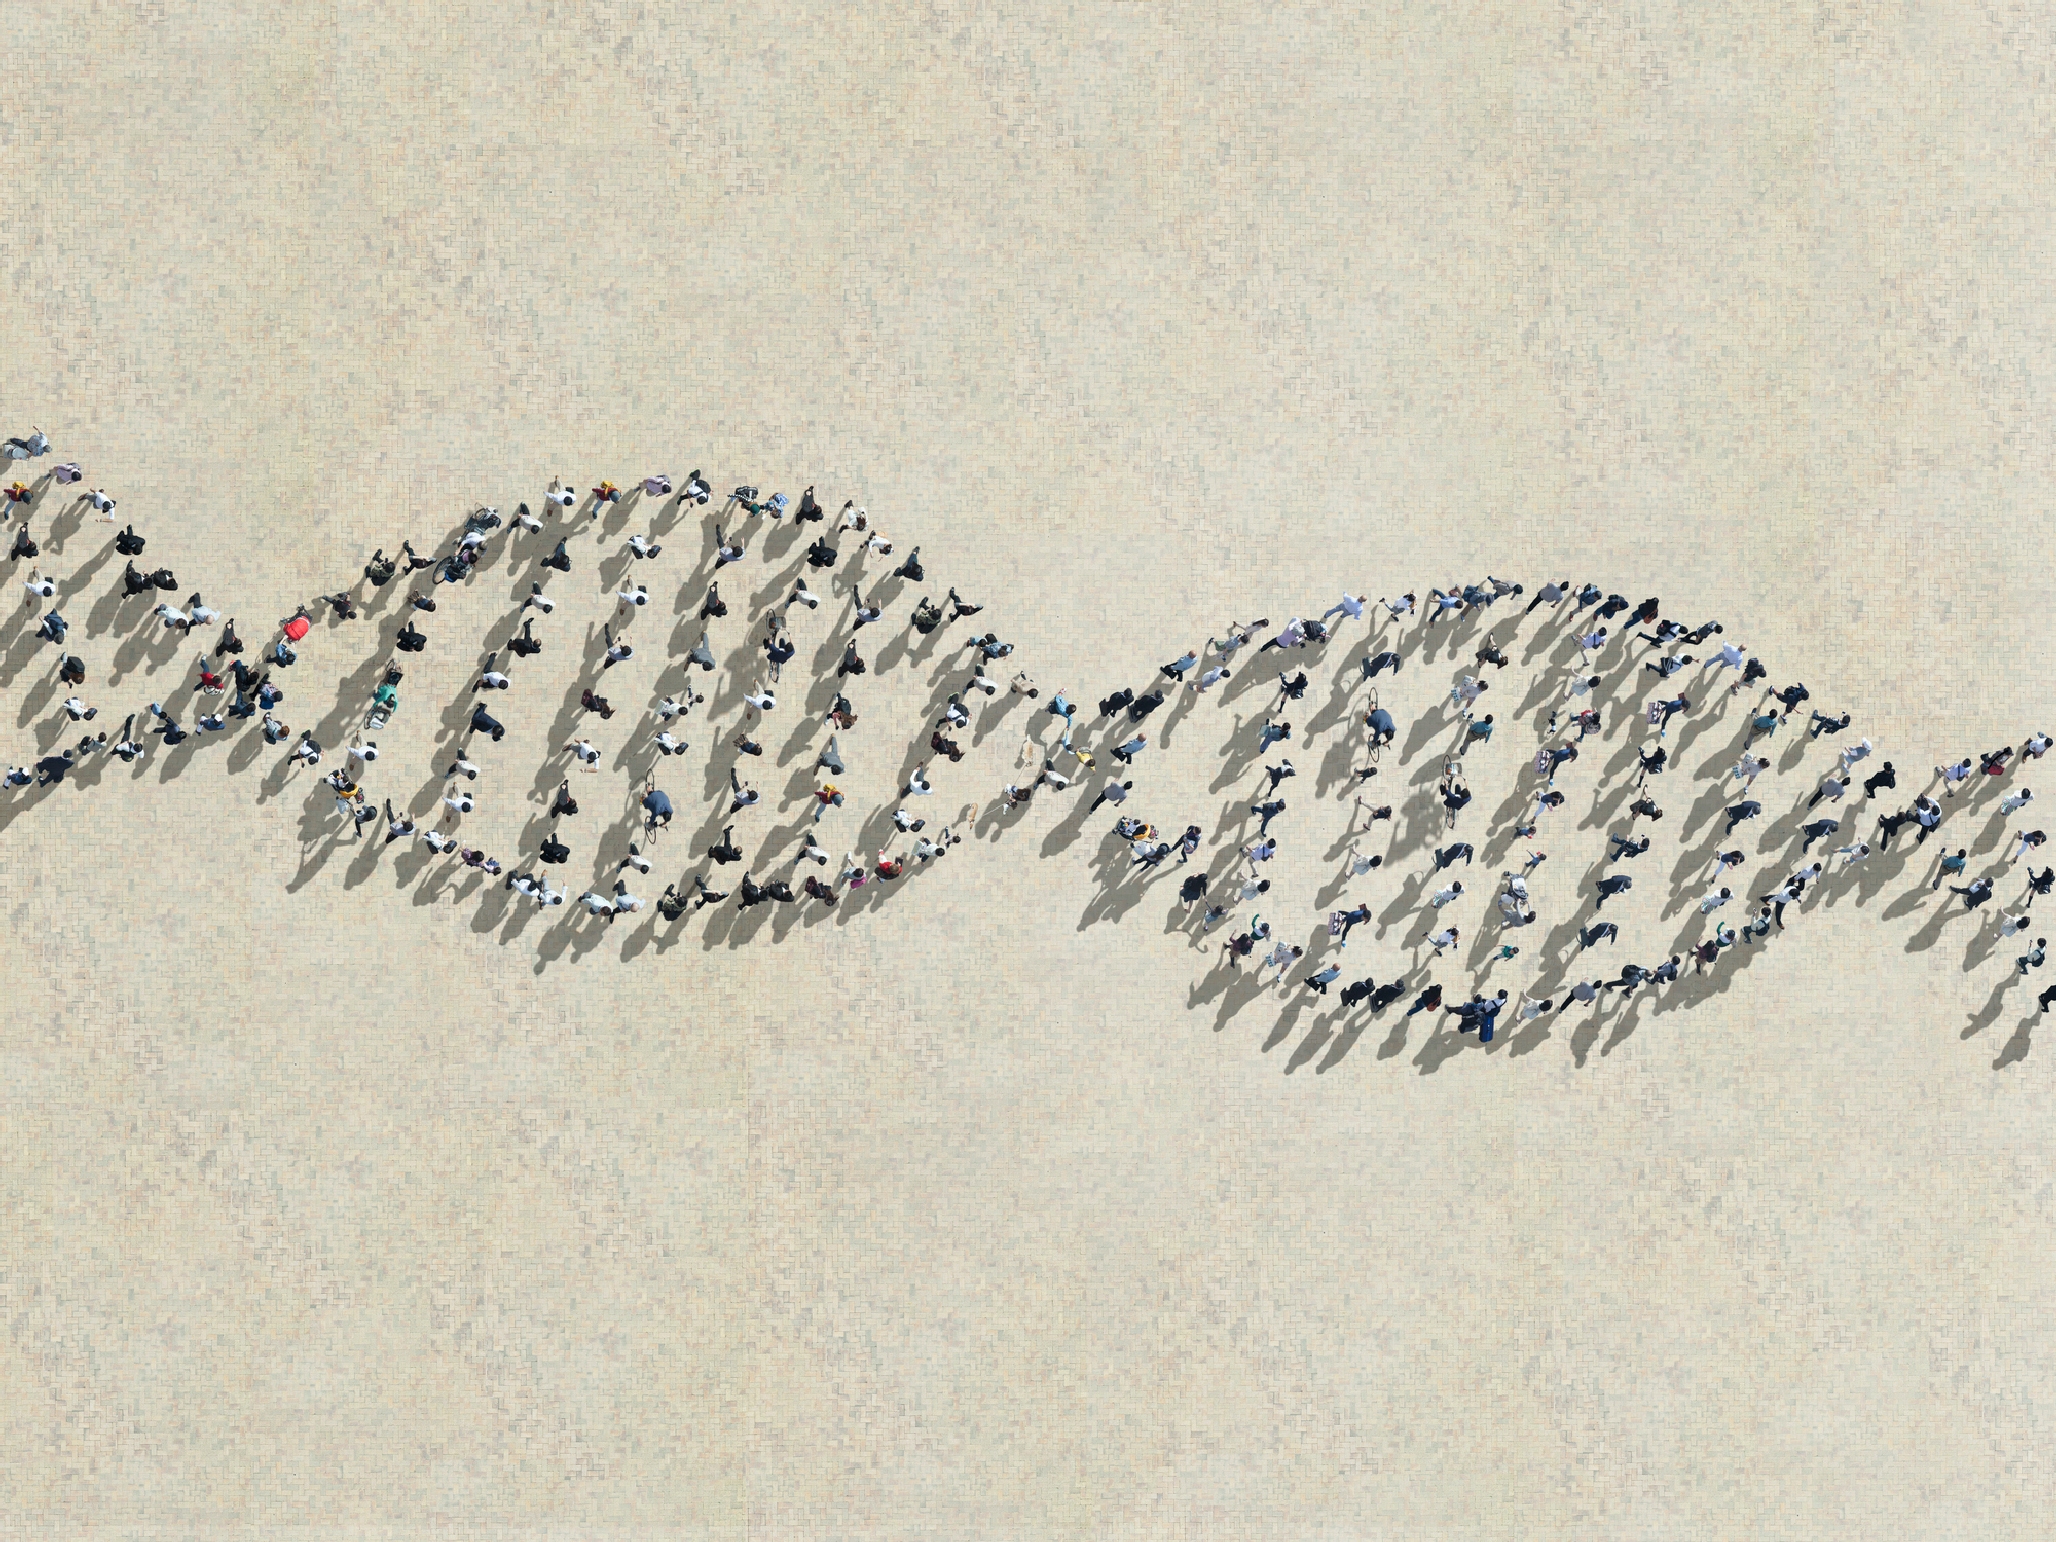 DNA链是由步行者制成的